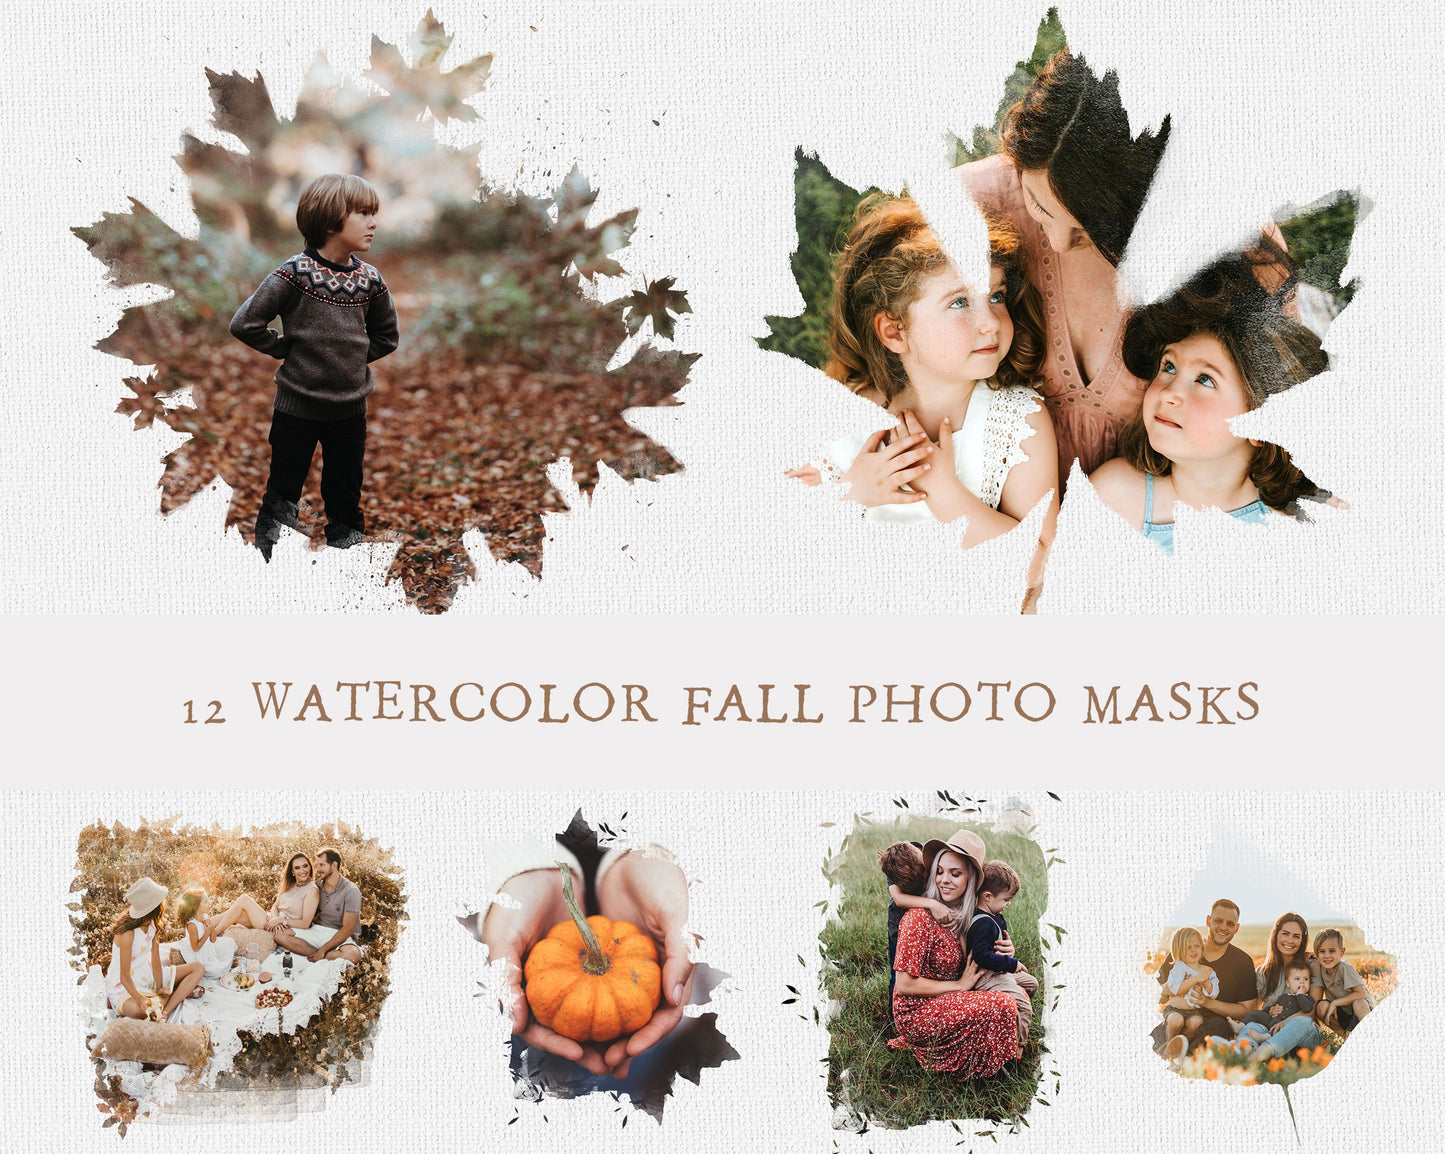 Watercolor Fall Photo Masks